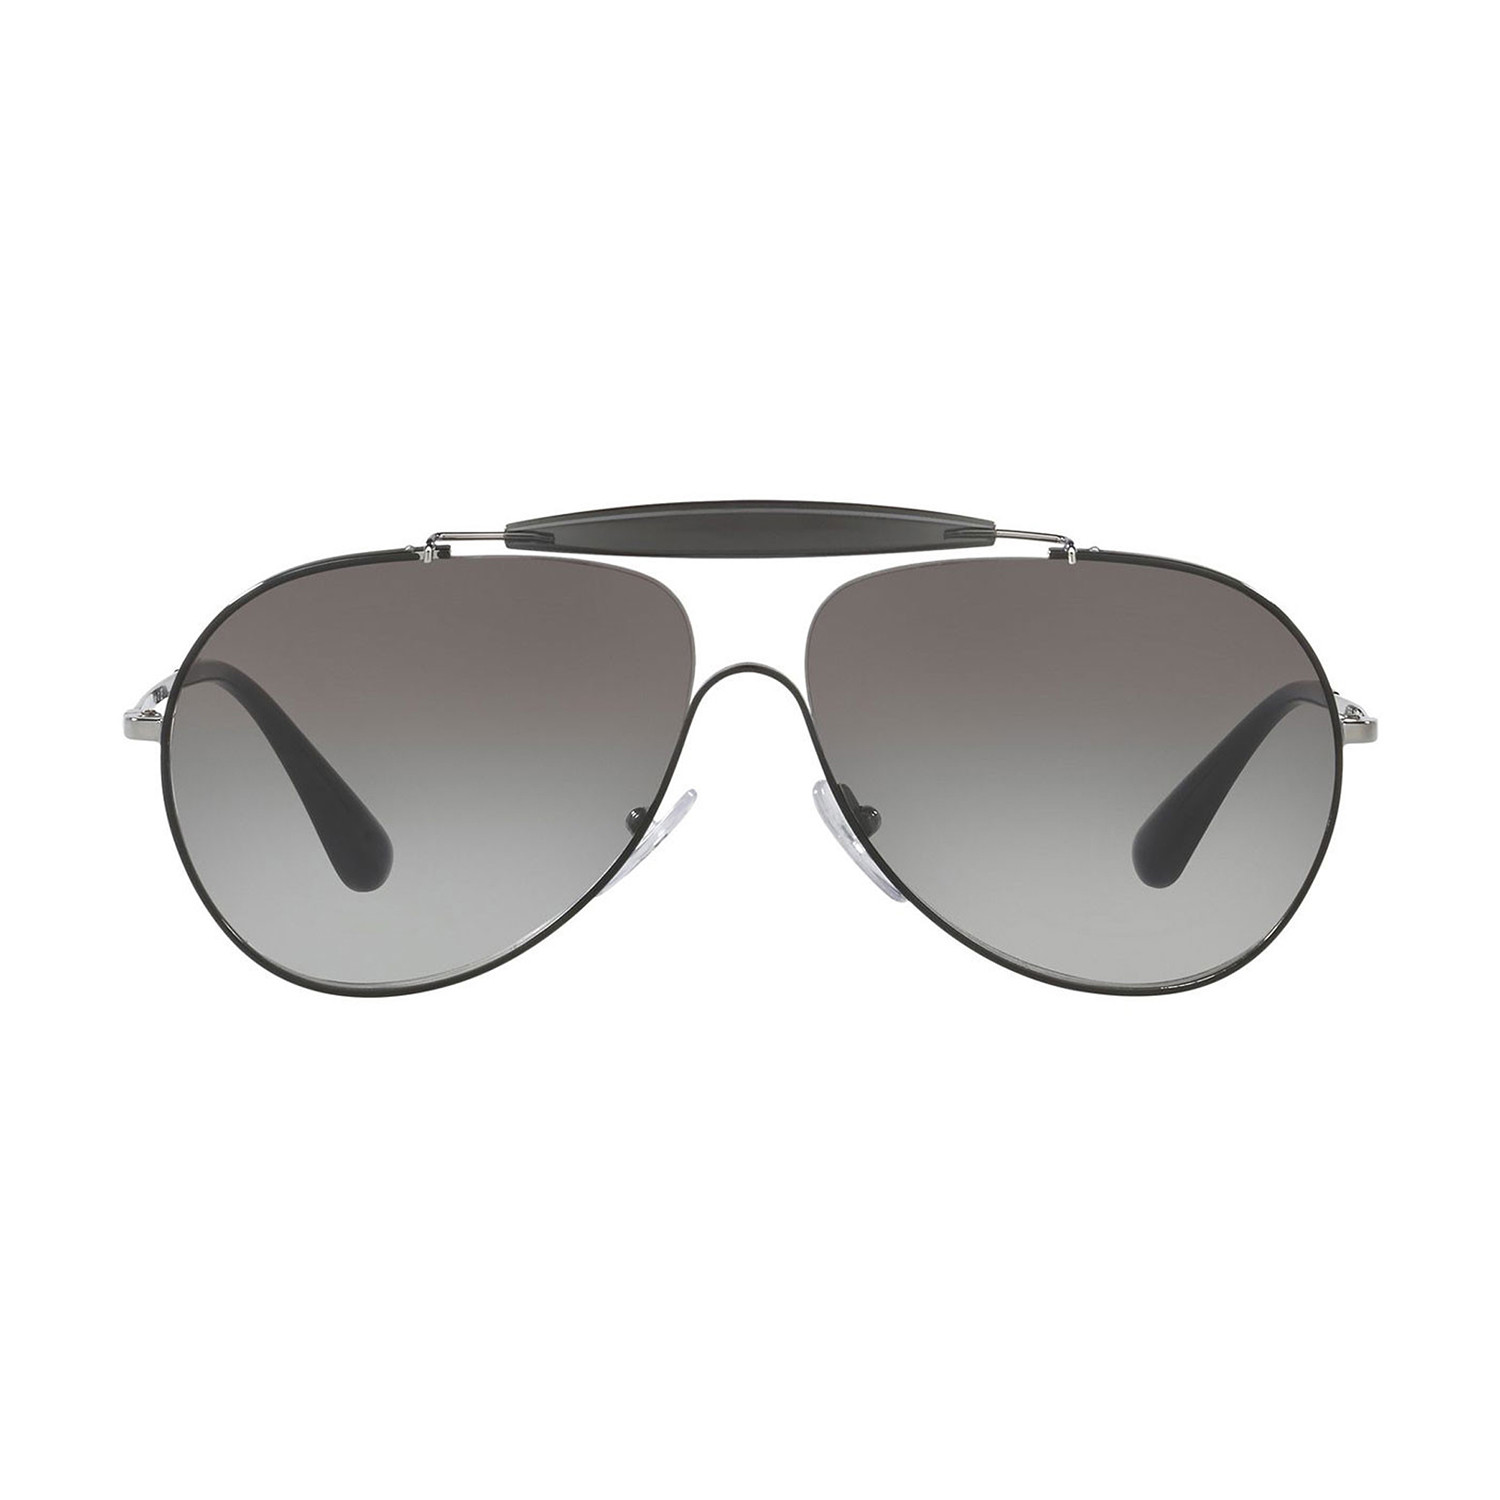 Prada // Men's Metal Sunglasses // Black Gunmetal + Gray Gradient - Men ...